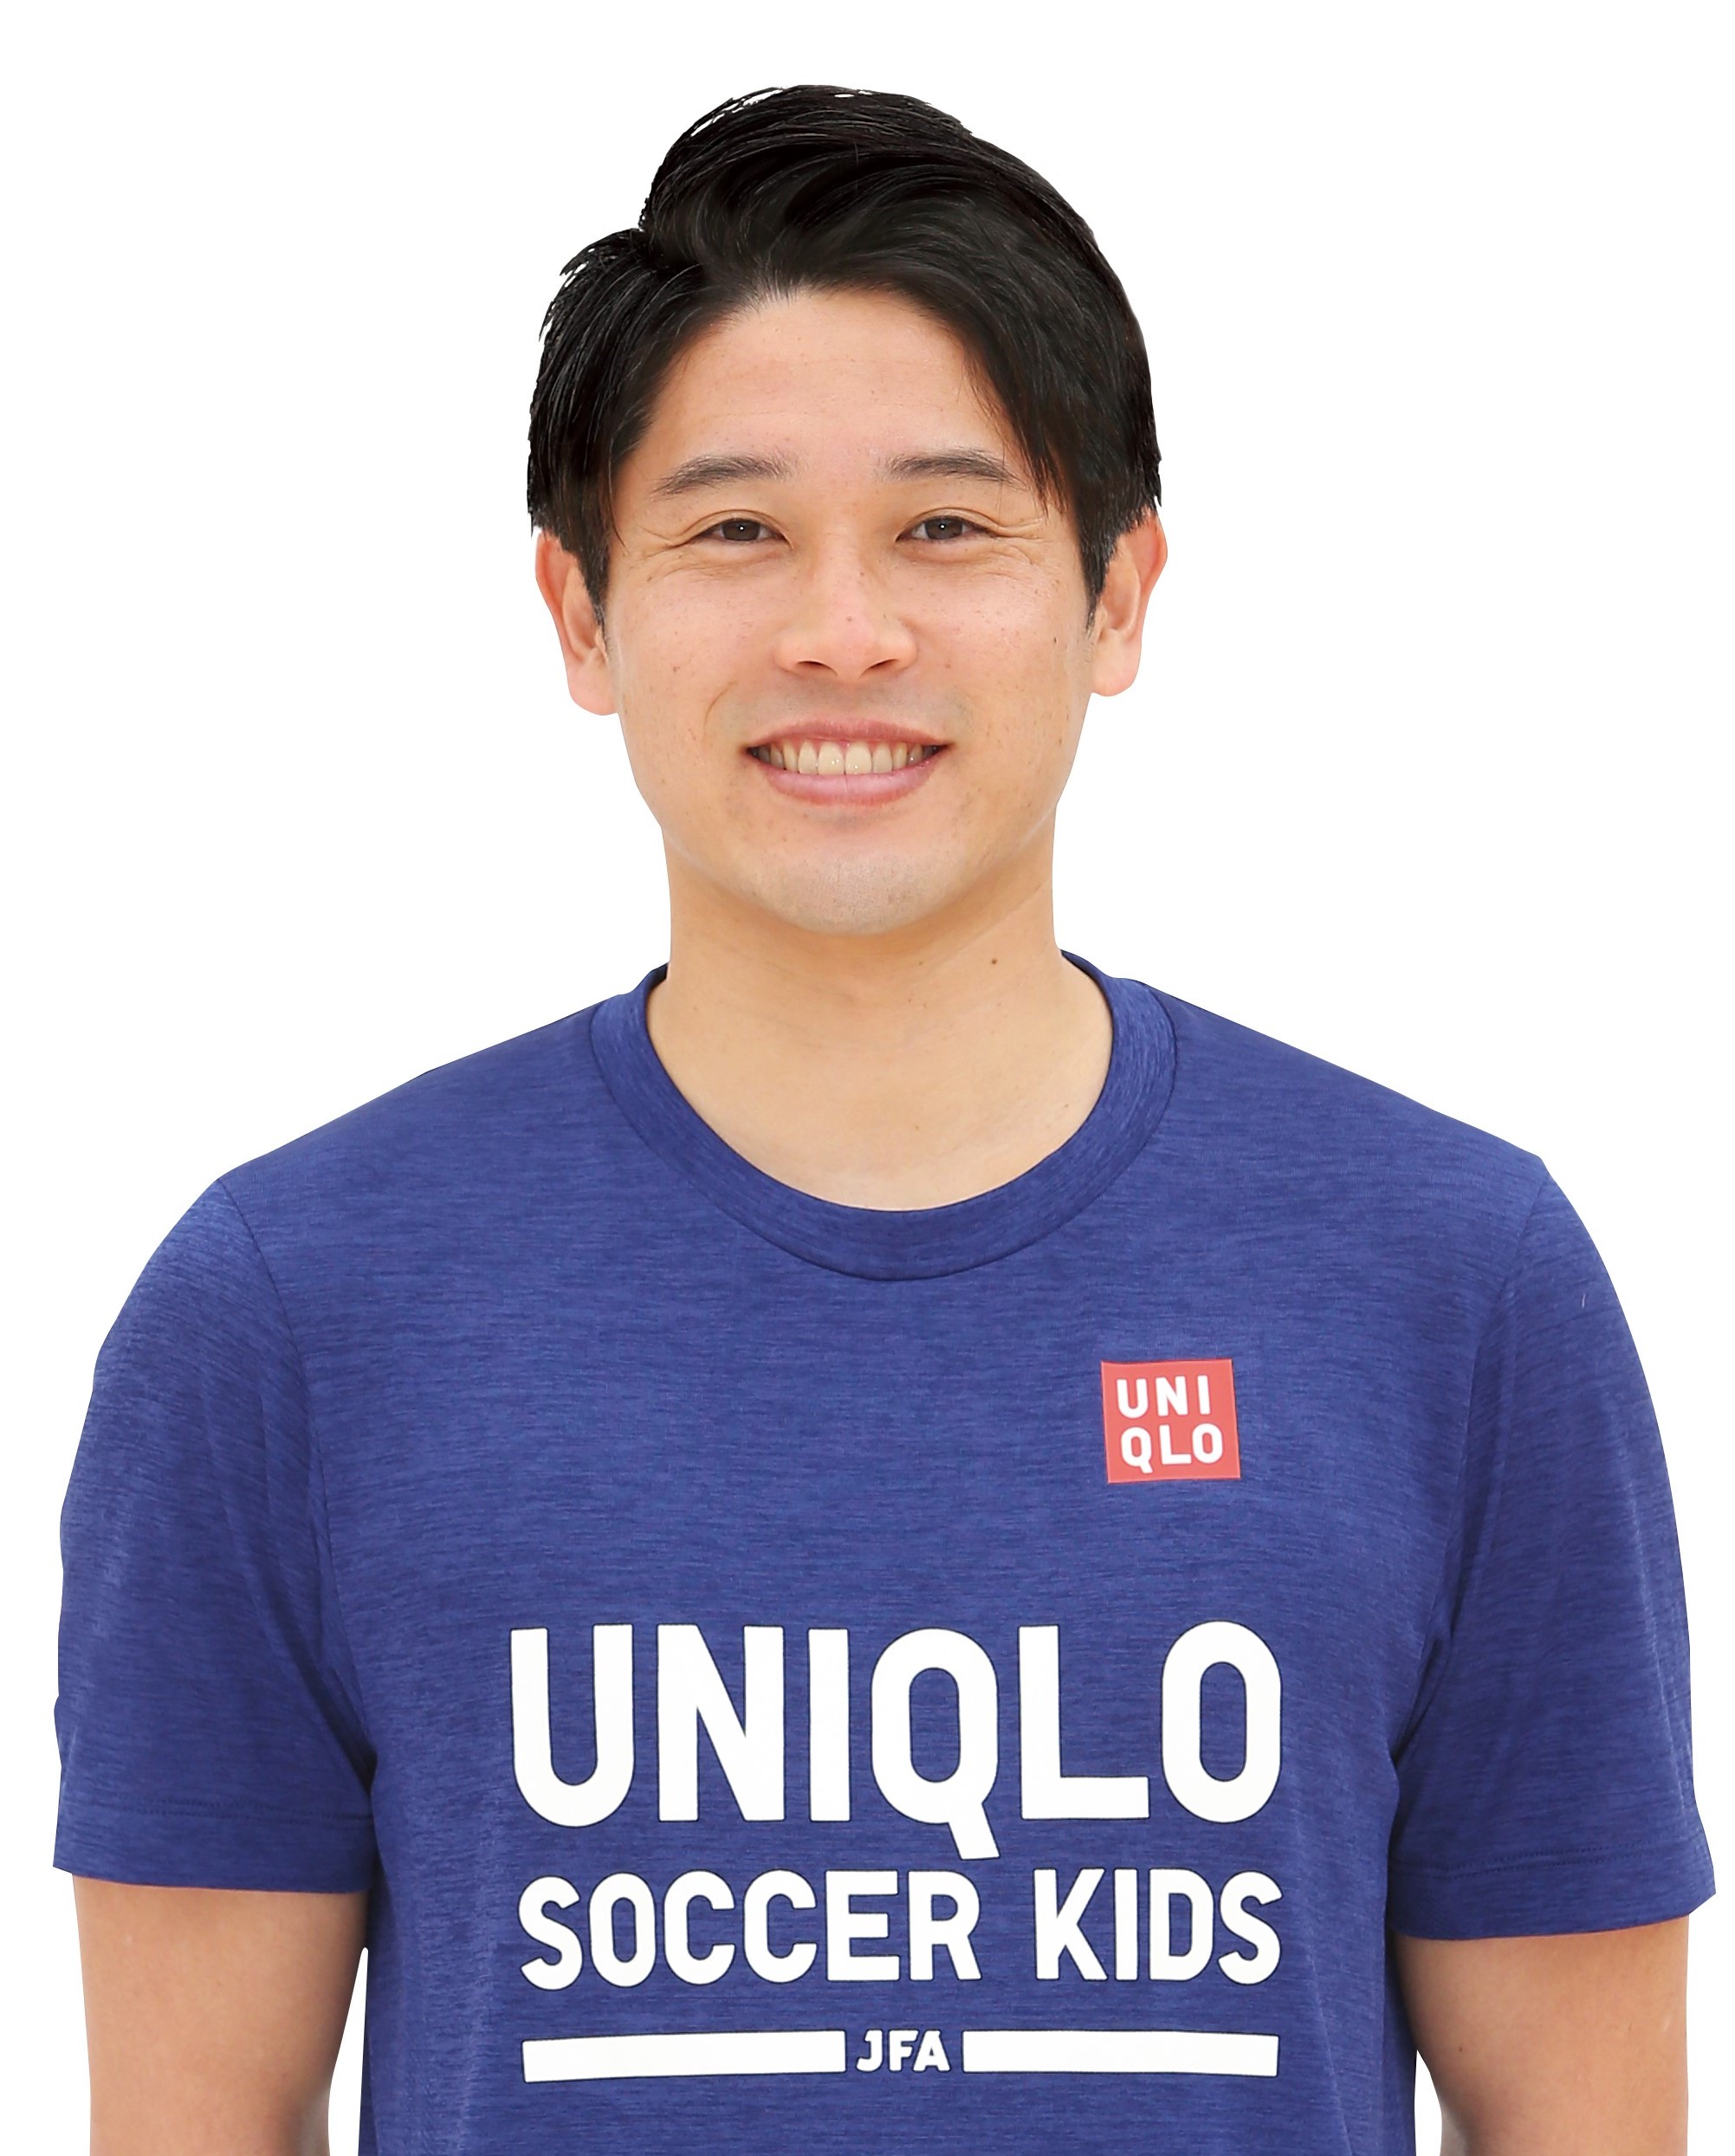 Jfaユニクロサッカーキッズ キャプテンに内田篤人氏が就任 株式会社ユニクロのプレスリリース